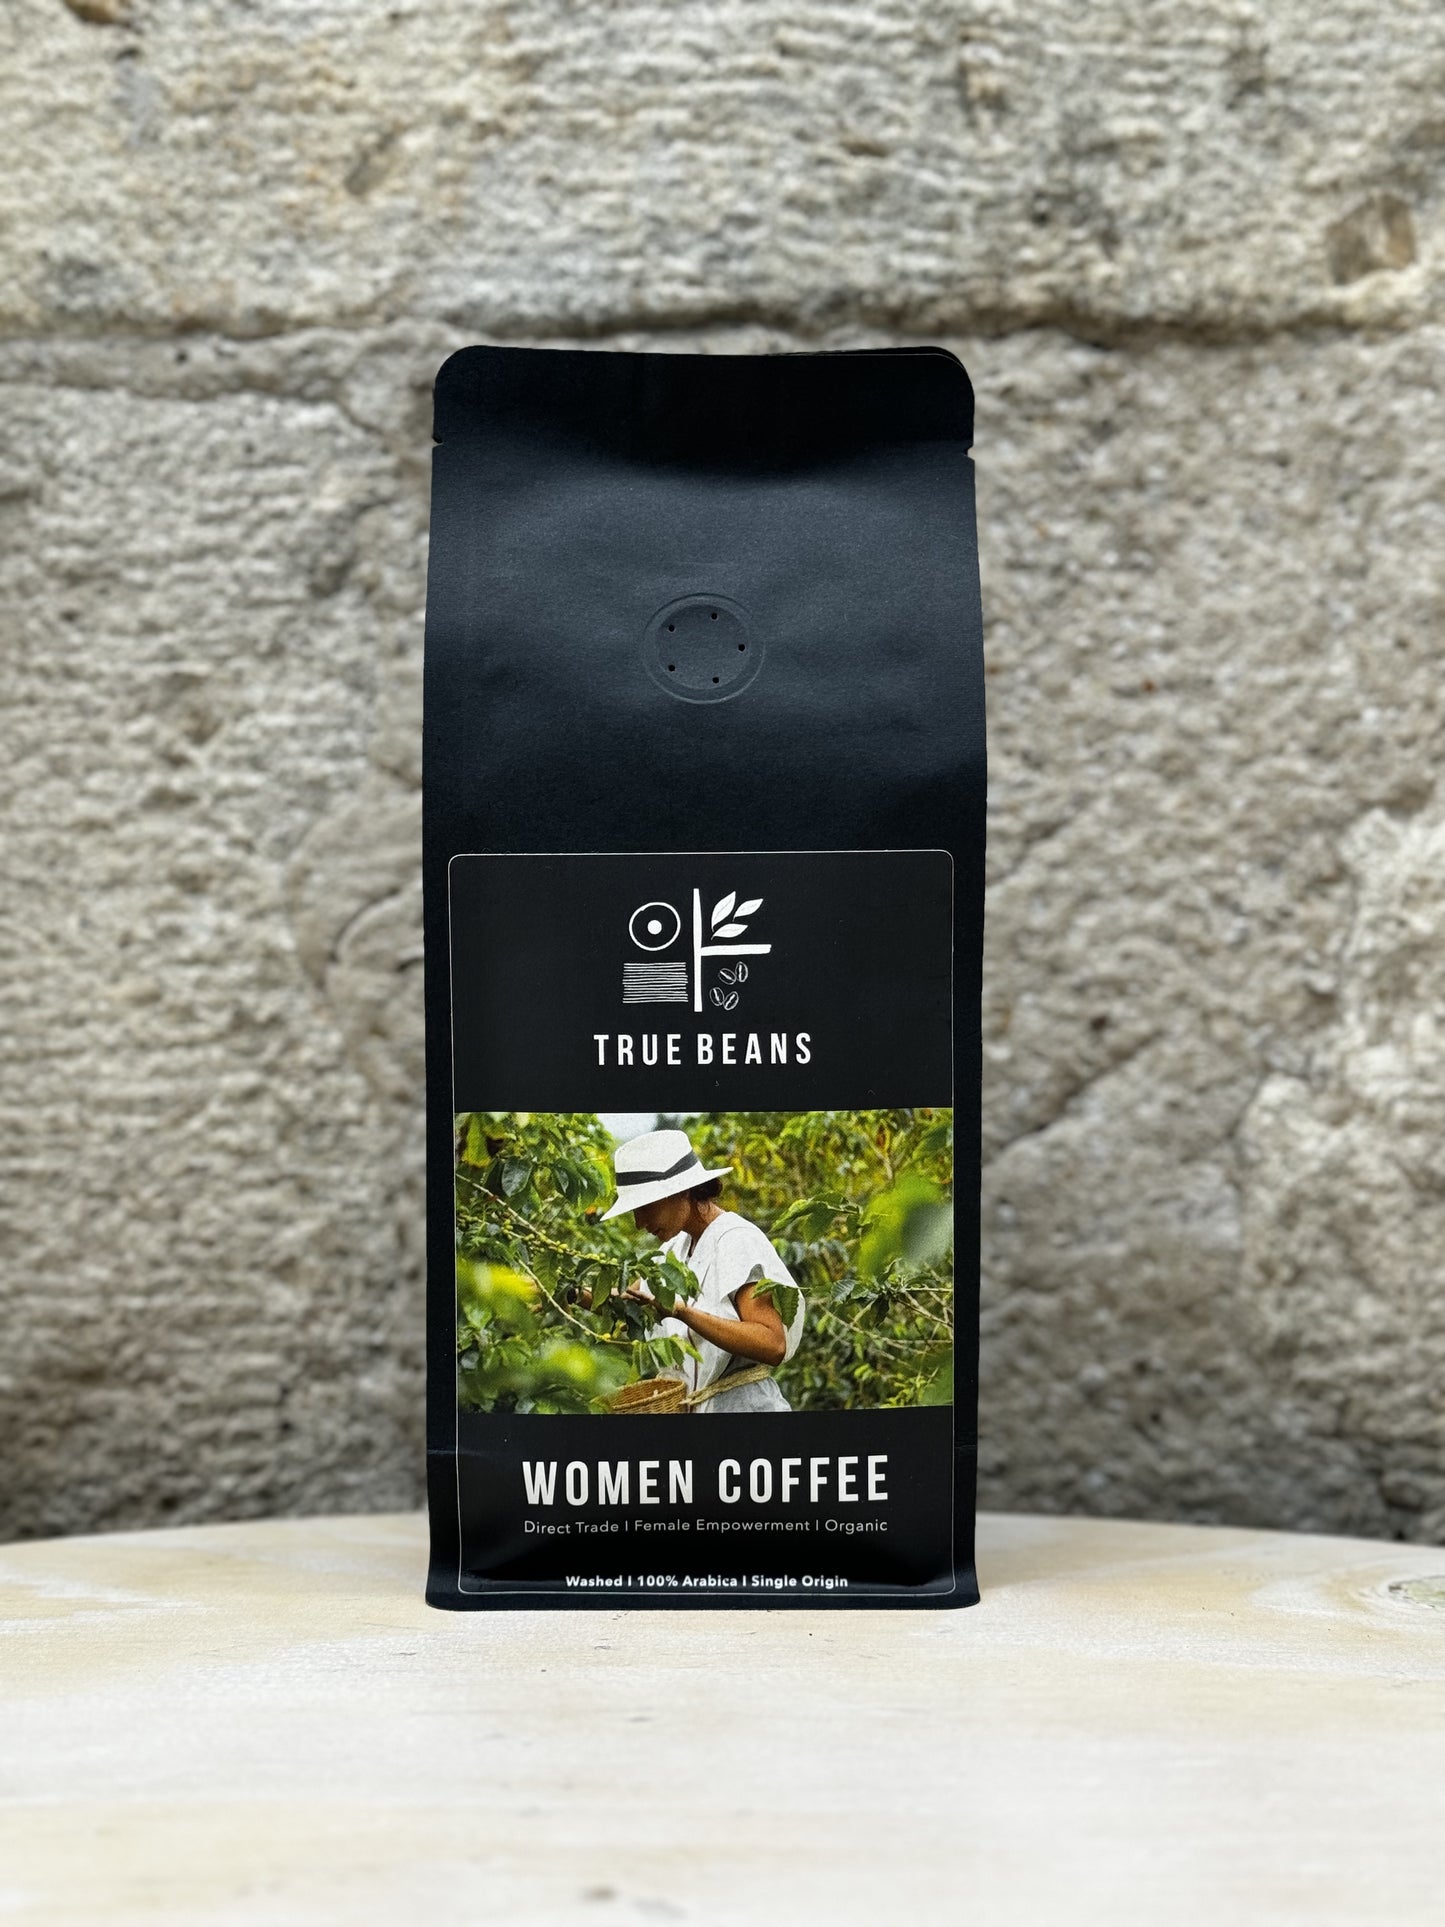  Eine Packung True Beans Women Coffee vor einer Steinwand. Auf der Verpackung ist ein Bild einer Frau, die Kaffee pflückt, sowie die Beschreibung "Direct Trade | Female Empowerment | Organic" zu sehen.